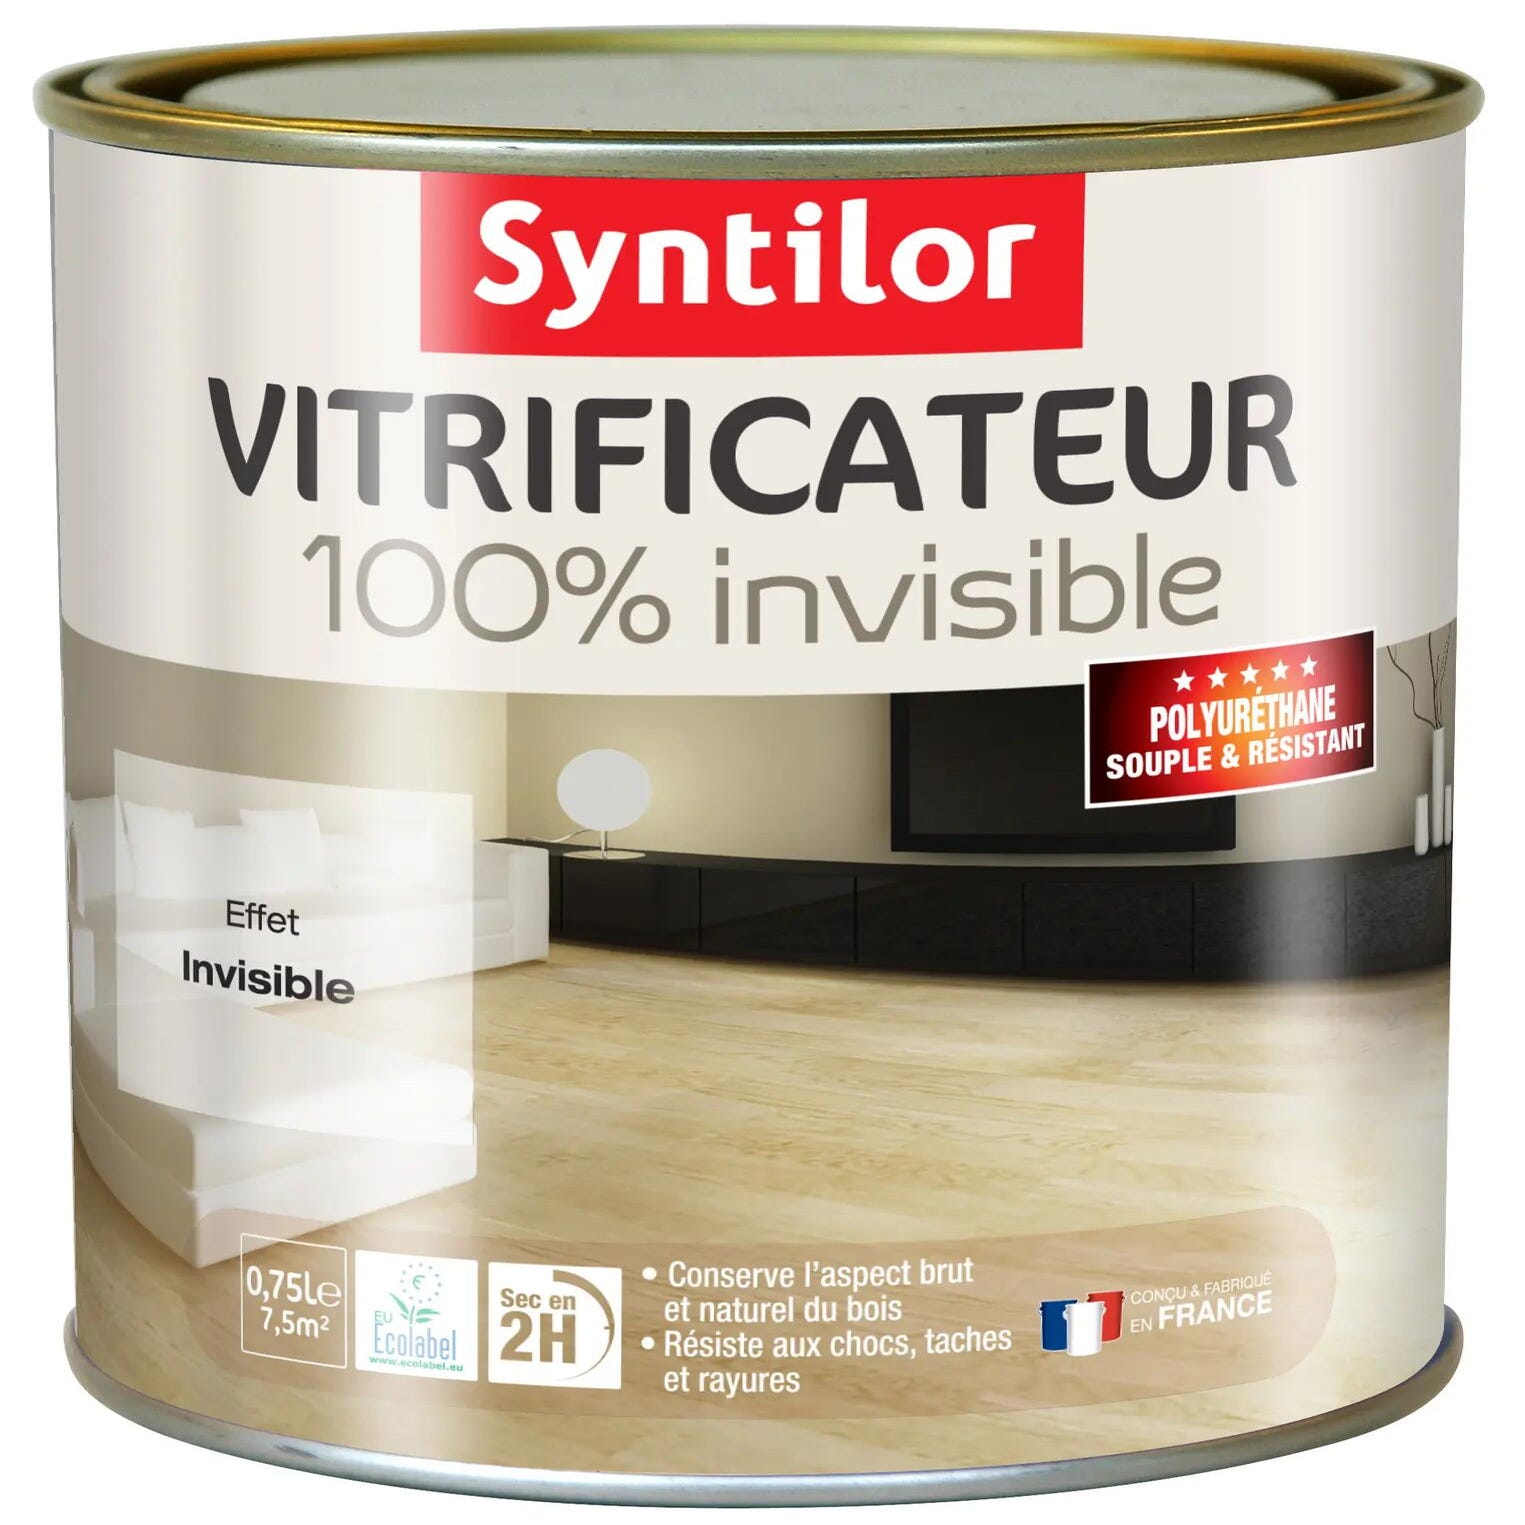 Vitrificateur ultra résistant Syntilor cire naturelle 0,75L